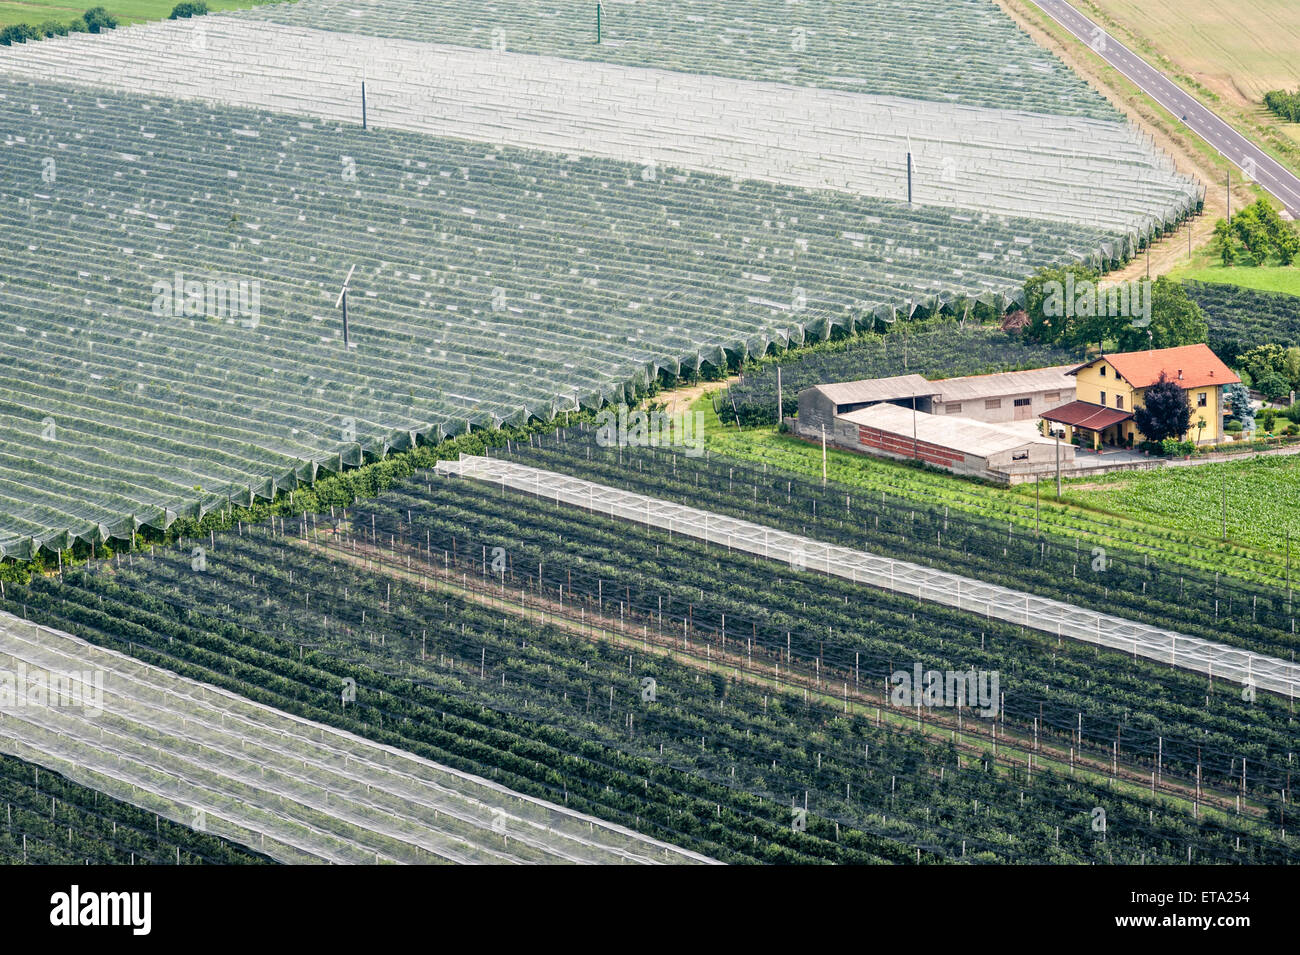 Saluzzo, Turin, Italien. Intensive Landwirtschaft in das Po-Delta. Pfirsich Obstgärten wachsen unter Schutzfolie Stockfoto